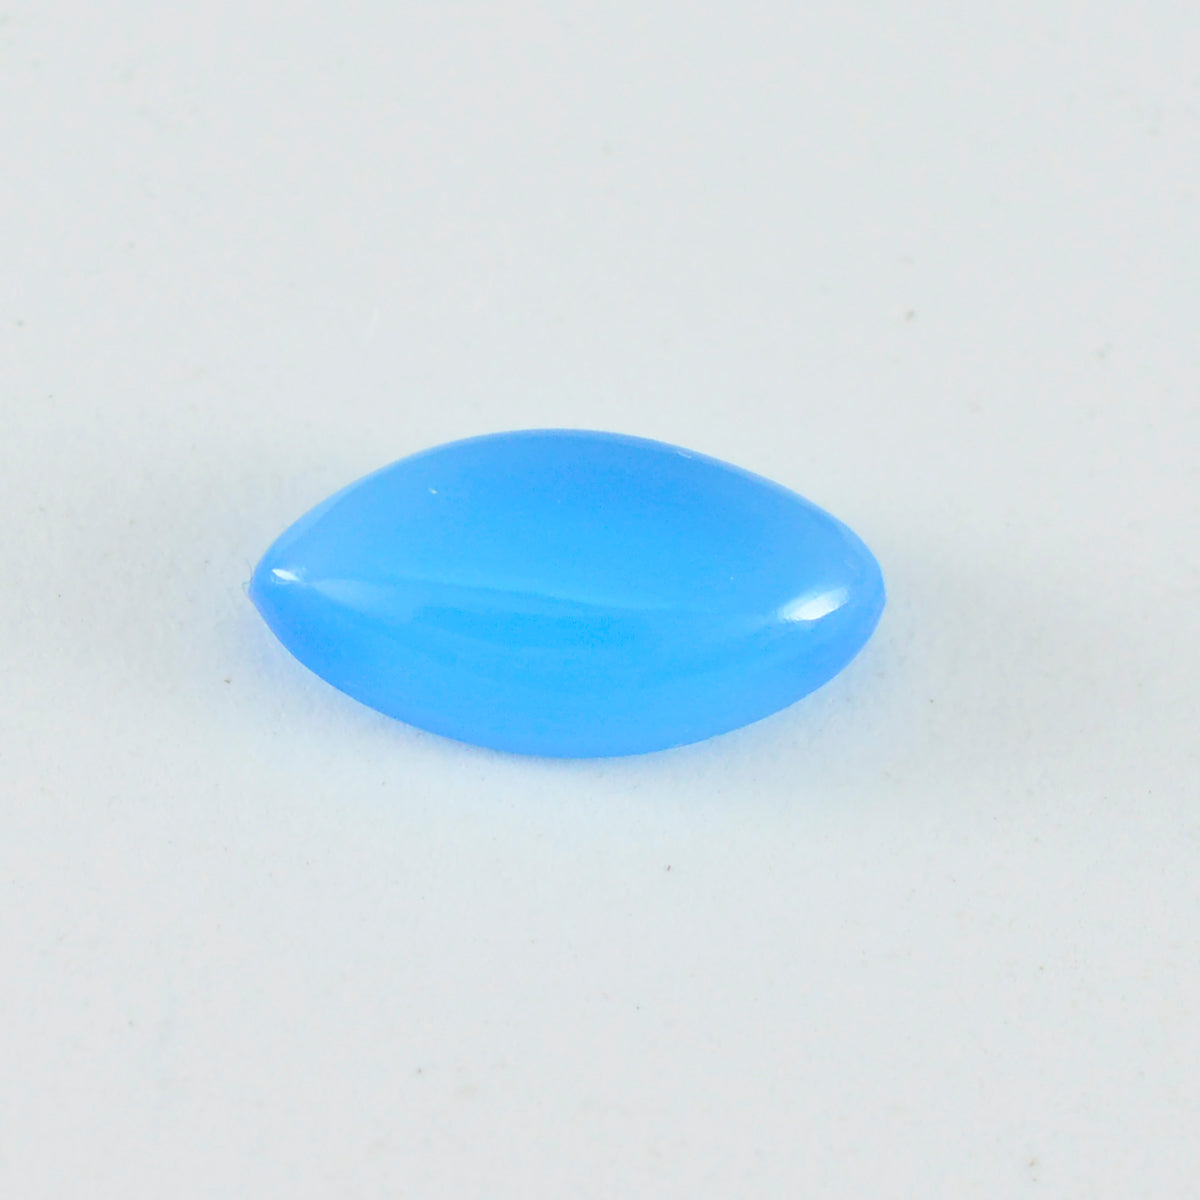 riyogems 1шт синий халцедон кабошон 8x16 мм форма маркиза отличное качество драгоценные камни